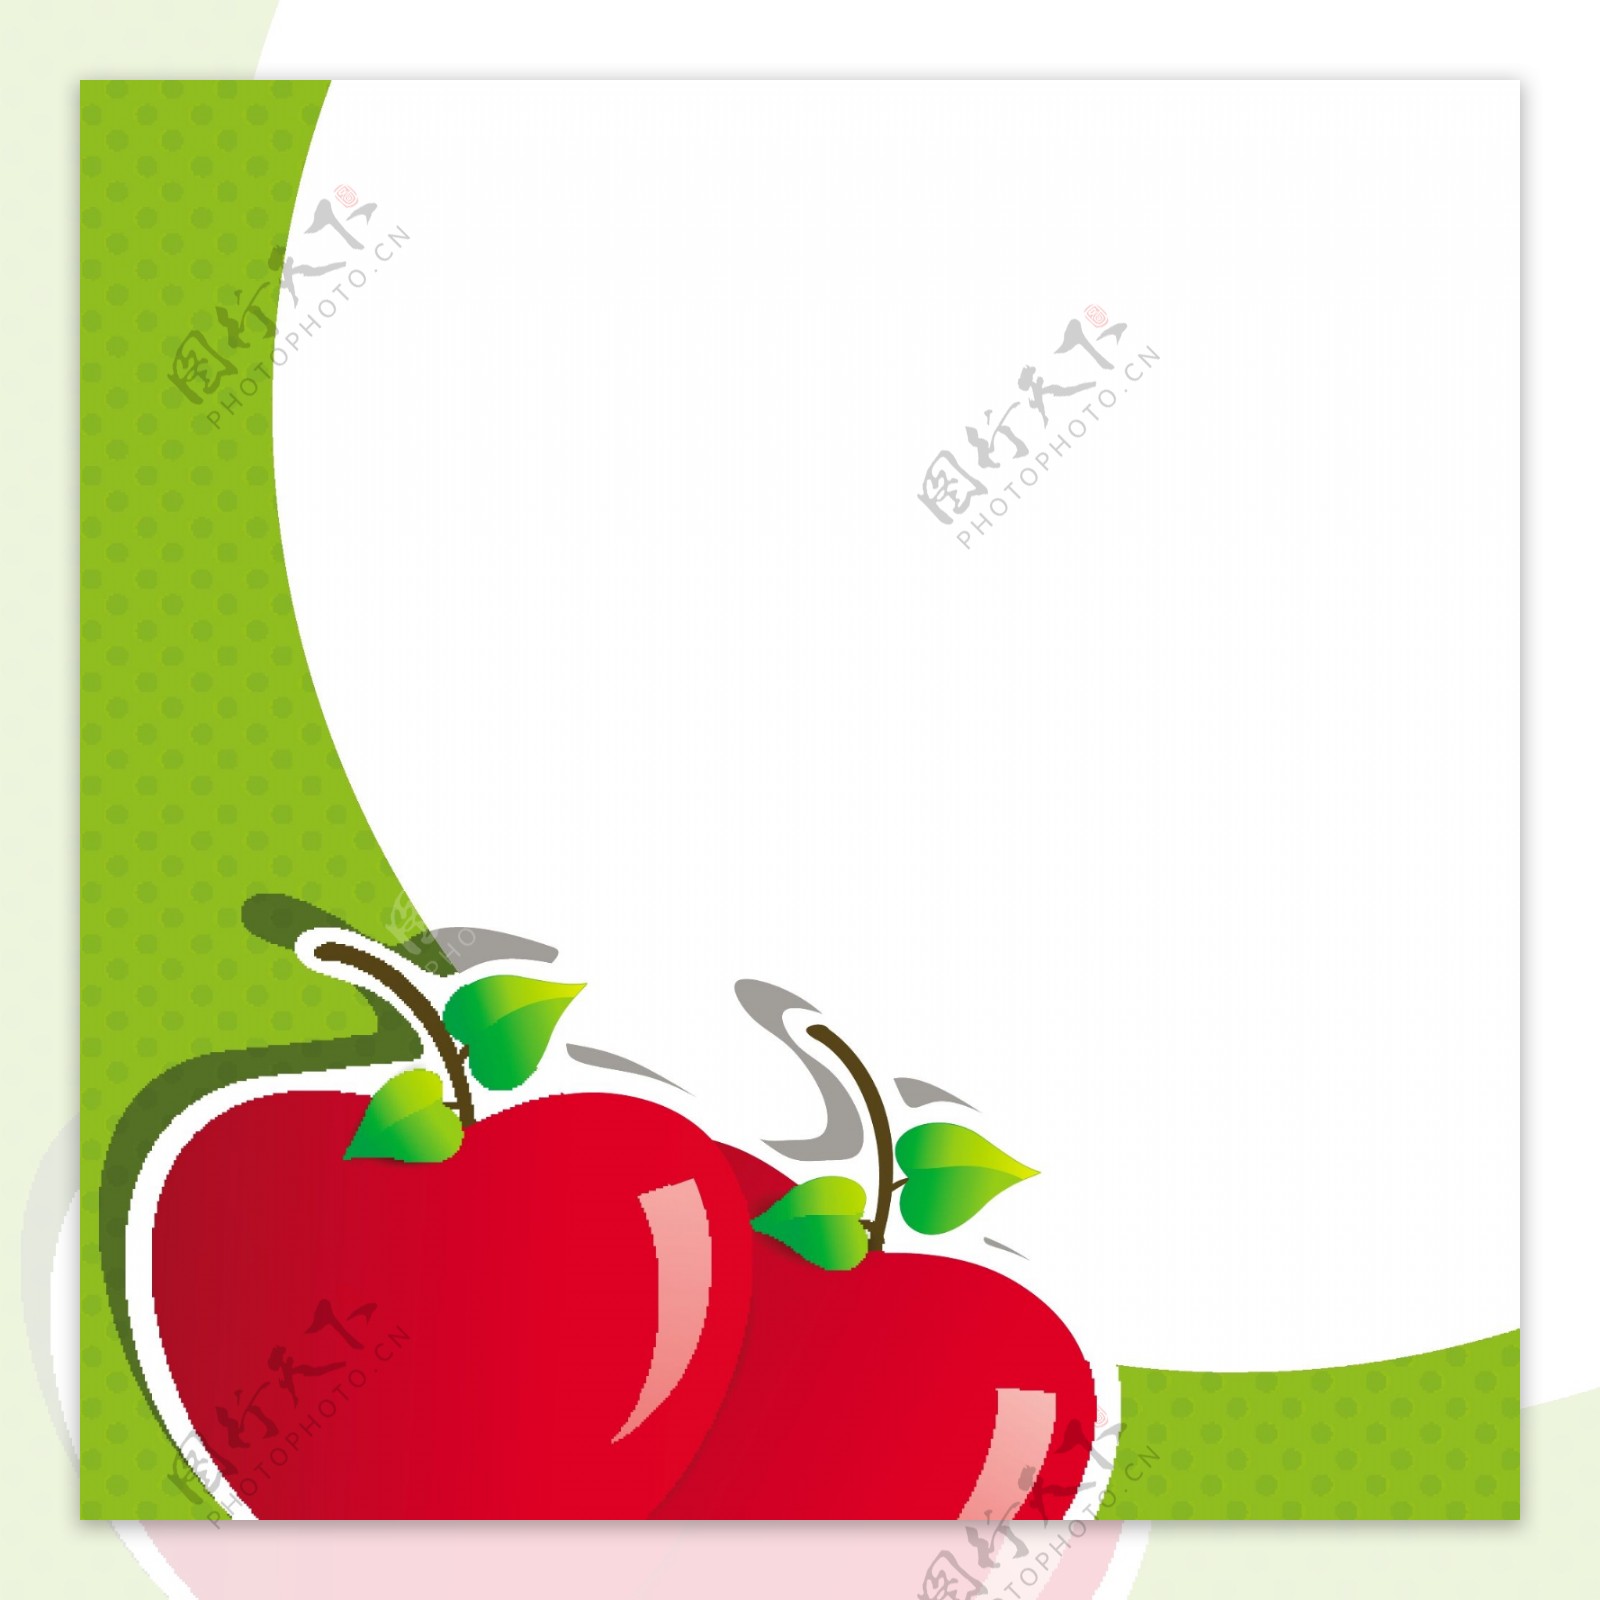 有红苹果在绿色和白色背景的医学概念